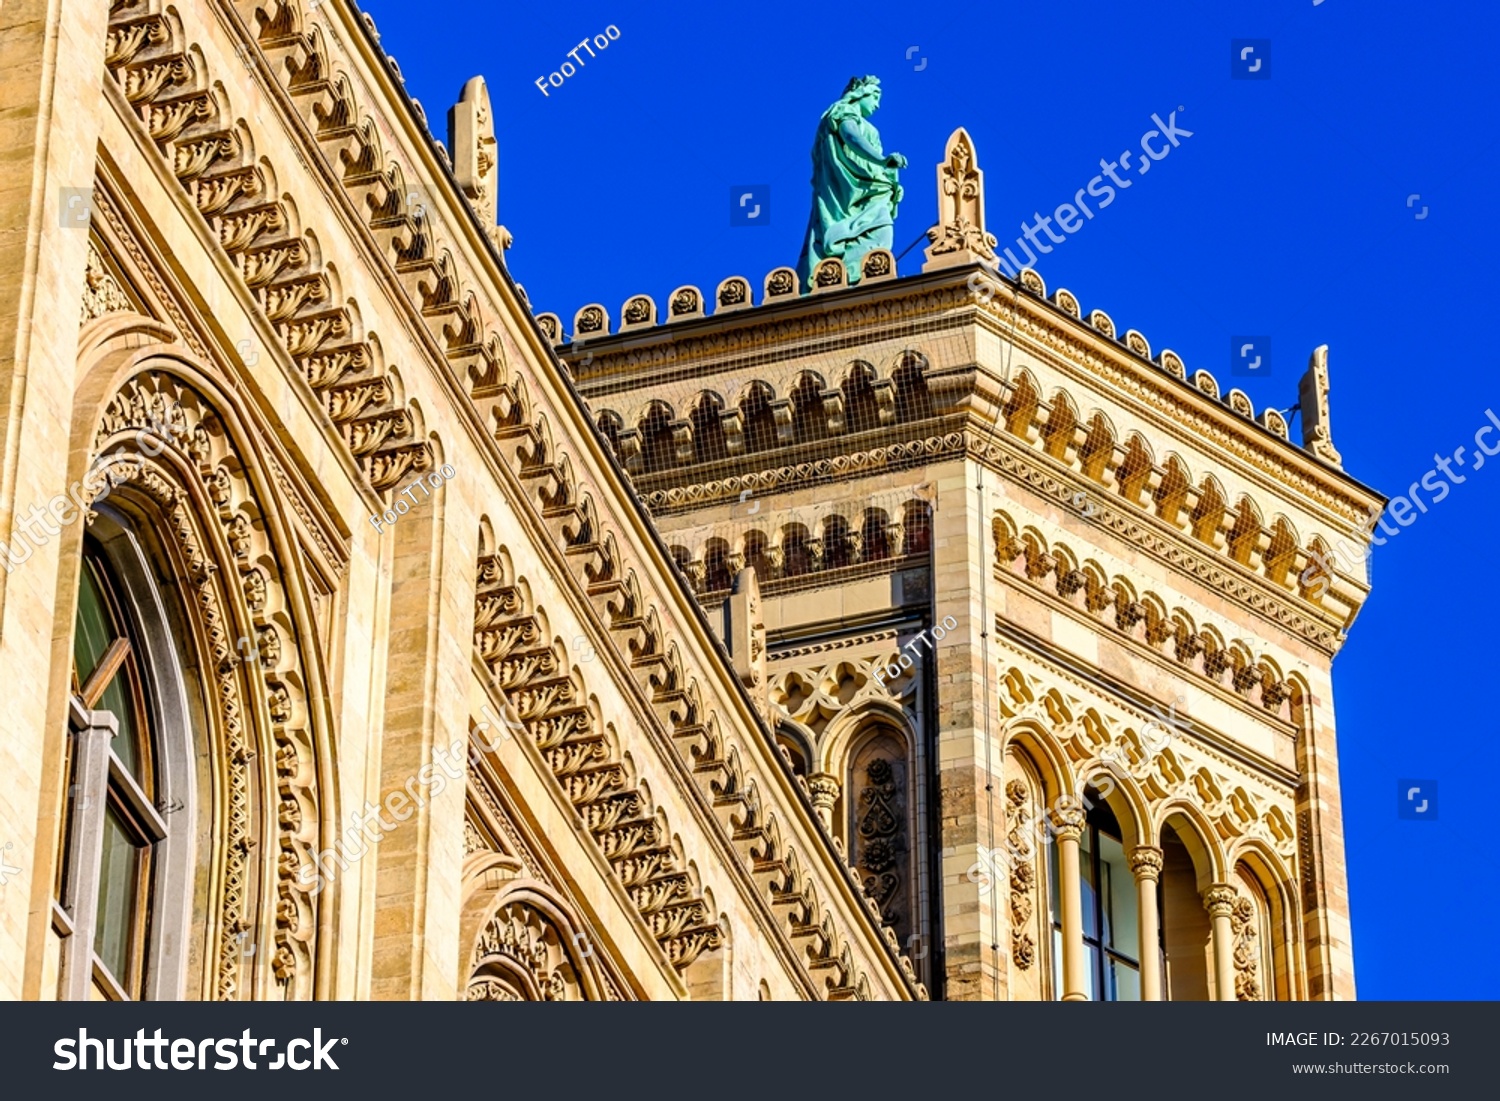 historic building of the government of upper bavaria - Regierung von Oberbayern - munich #2267015093